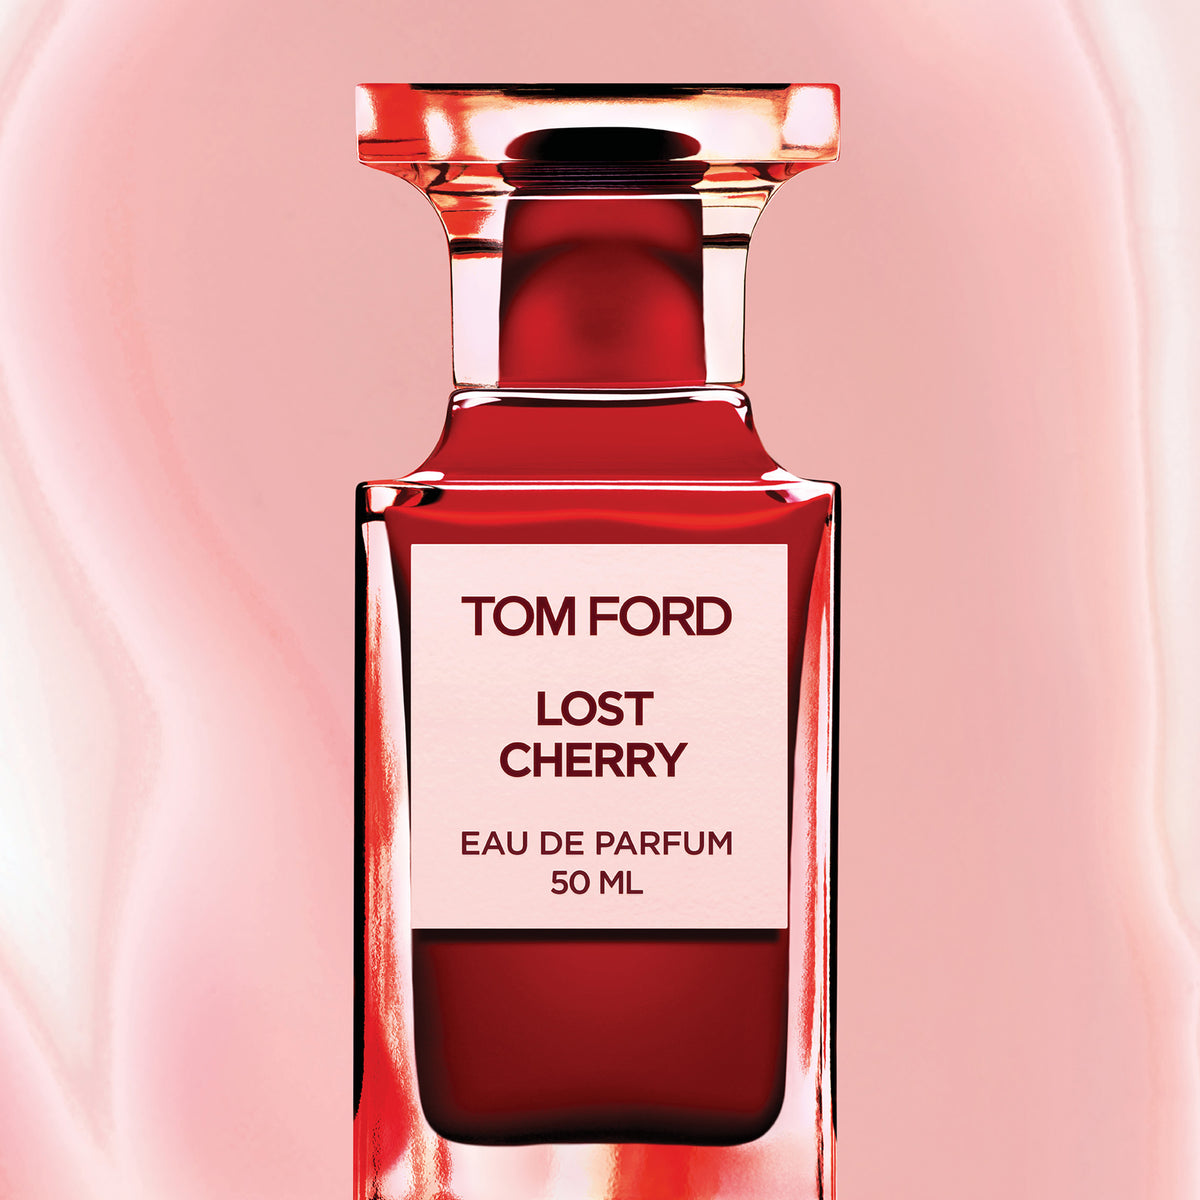 Tom Ford Lost Cherry Eau de Parfum .